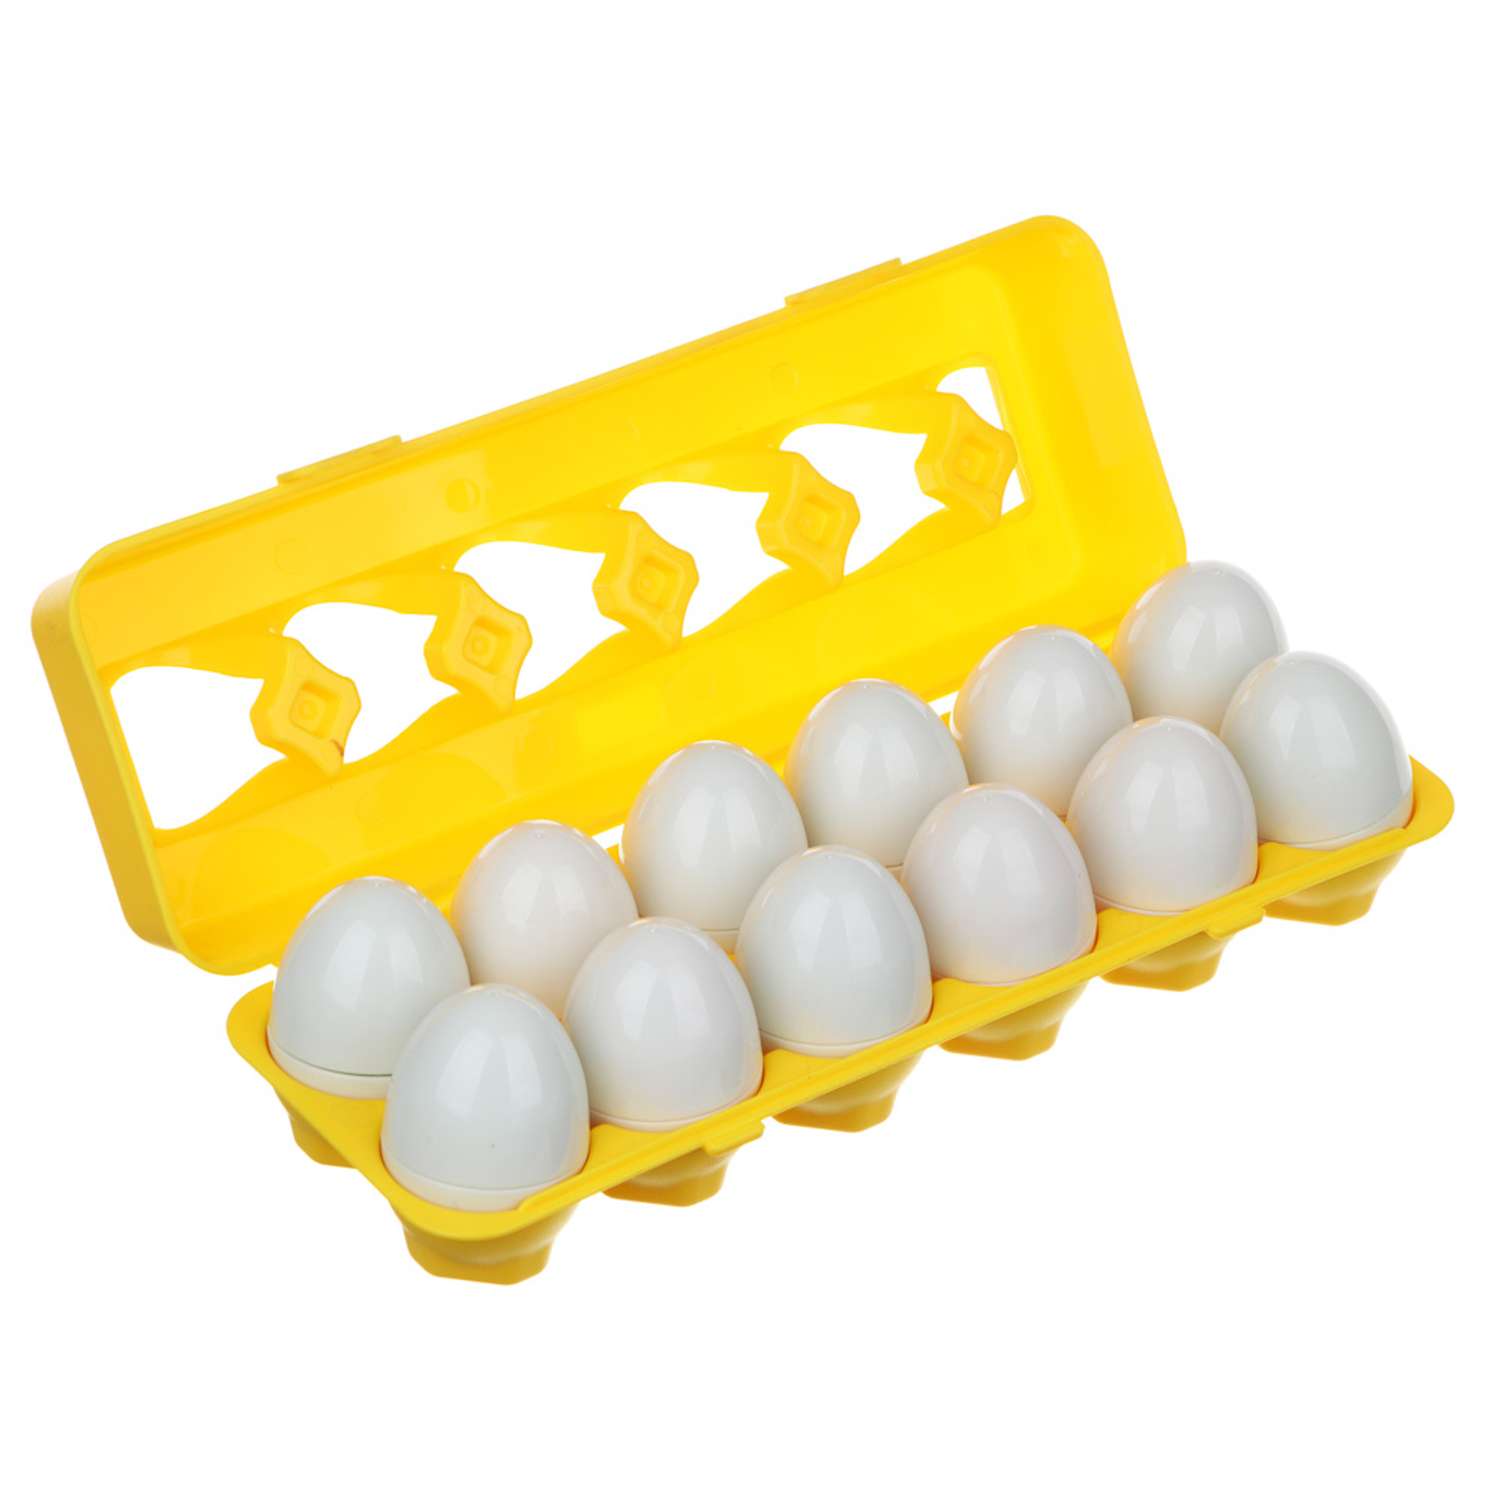 Обучающий сортер Игроленд Коробка с яйцами - фото 1